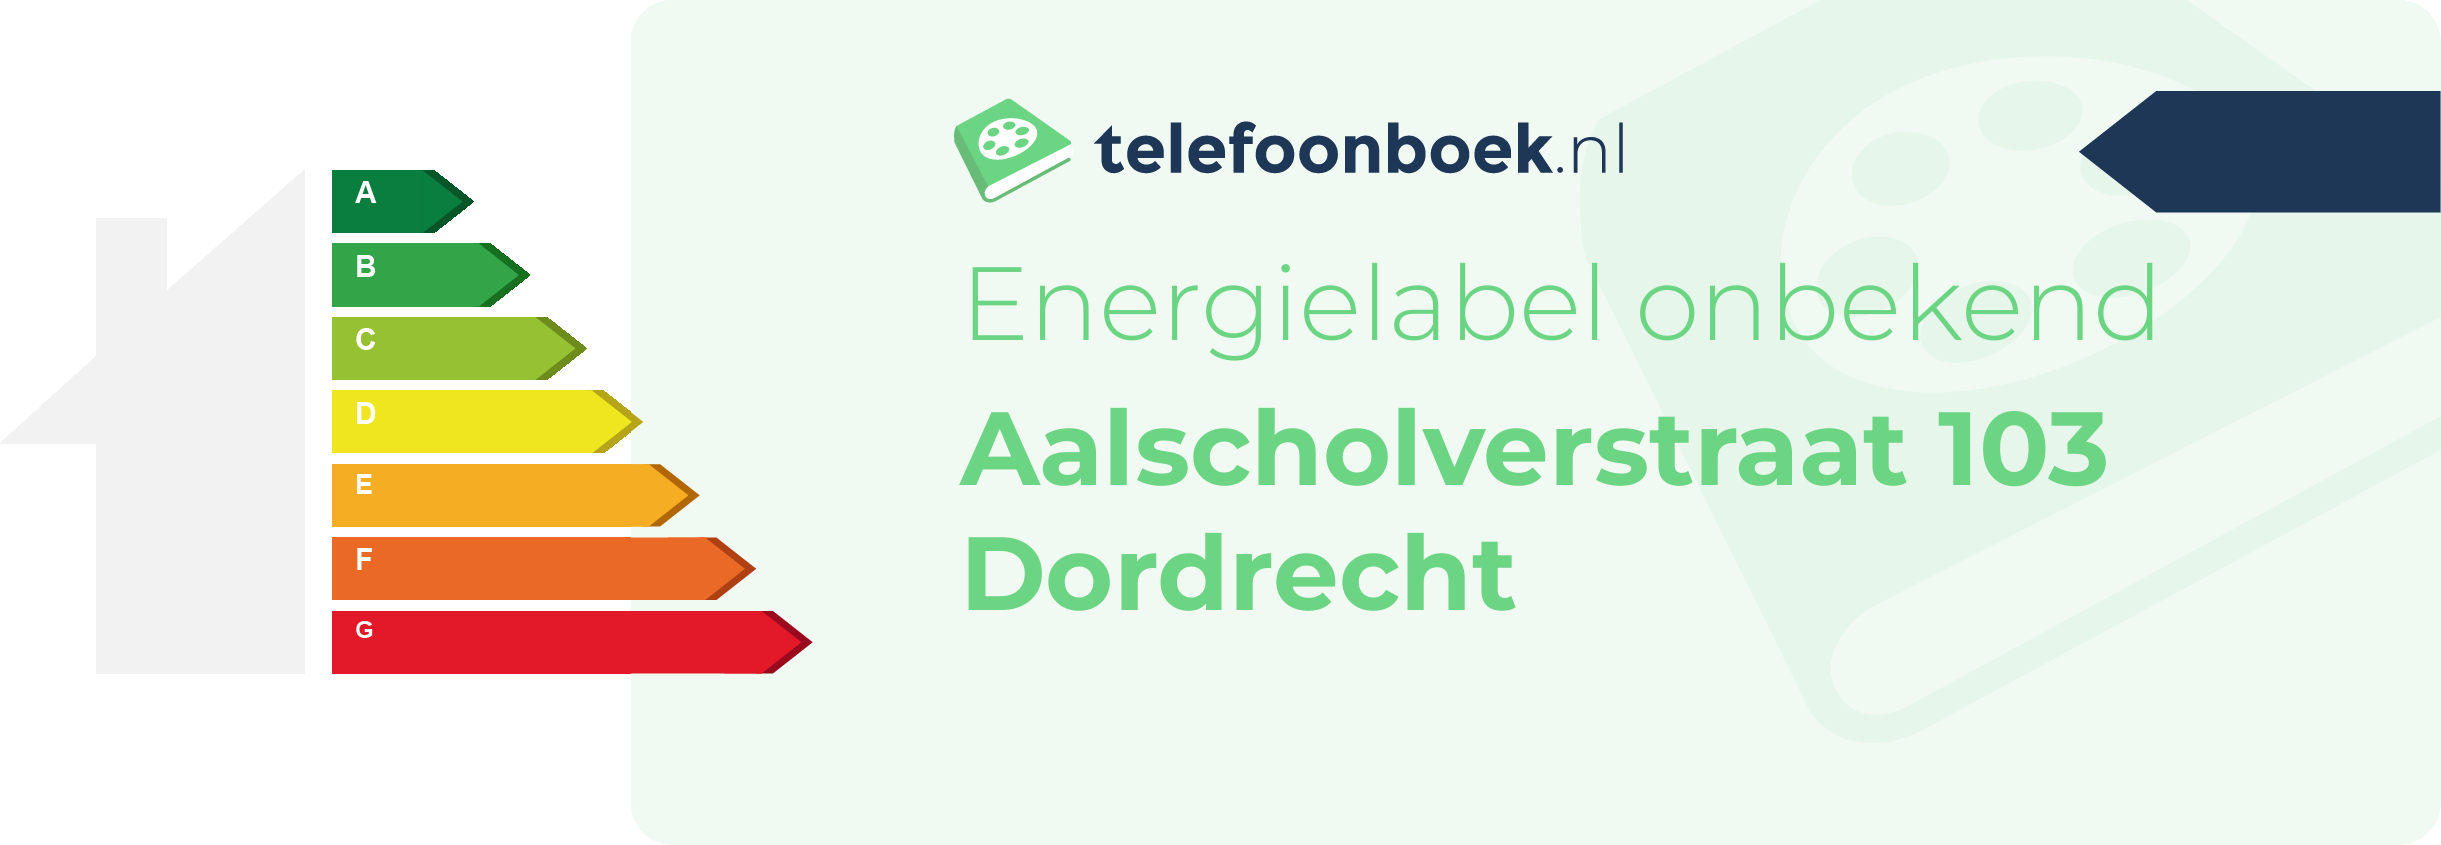 Energielabel Aalscholverstraat 103 Dordrecht